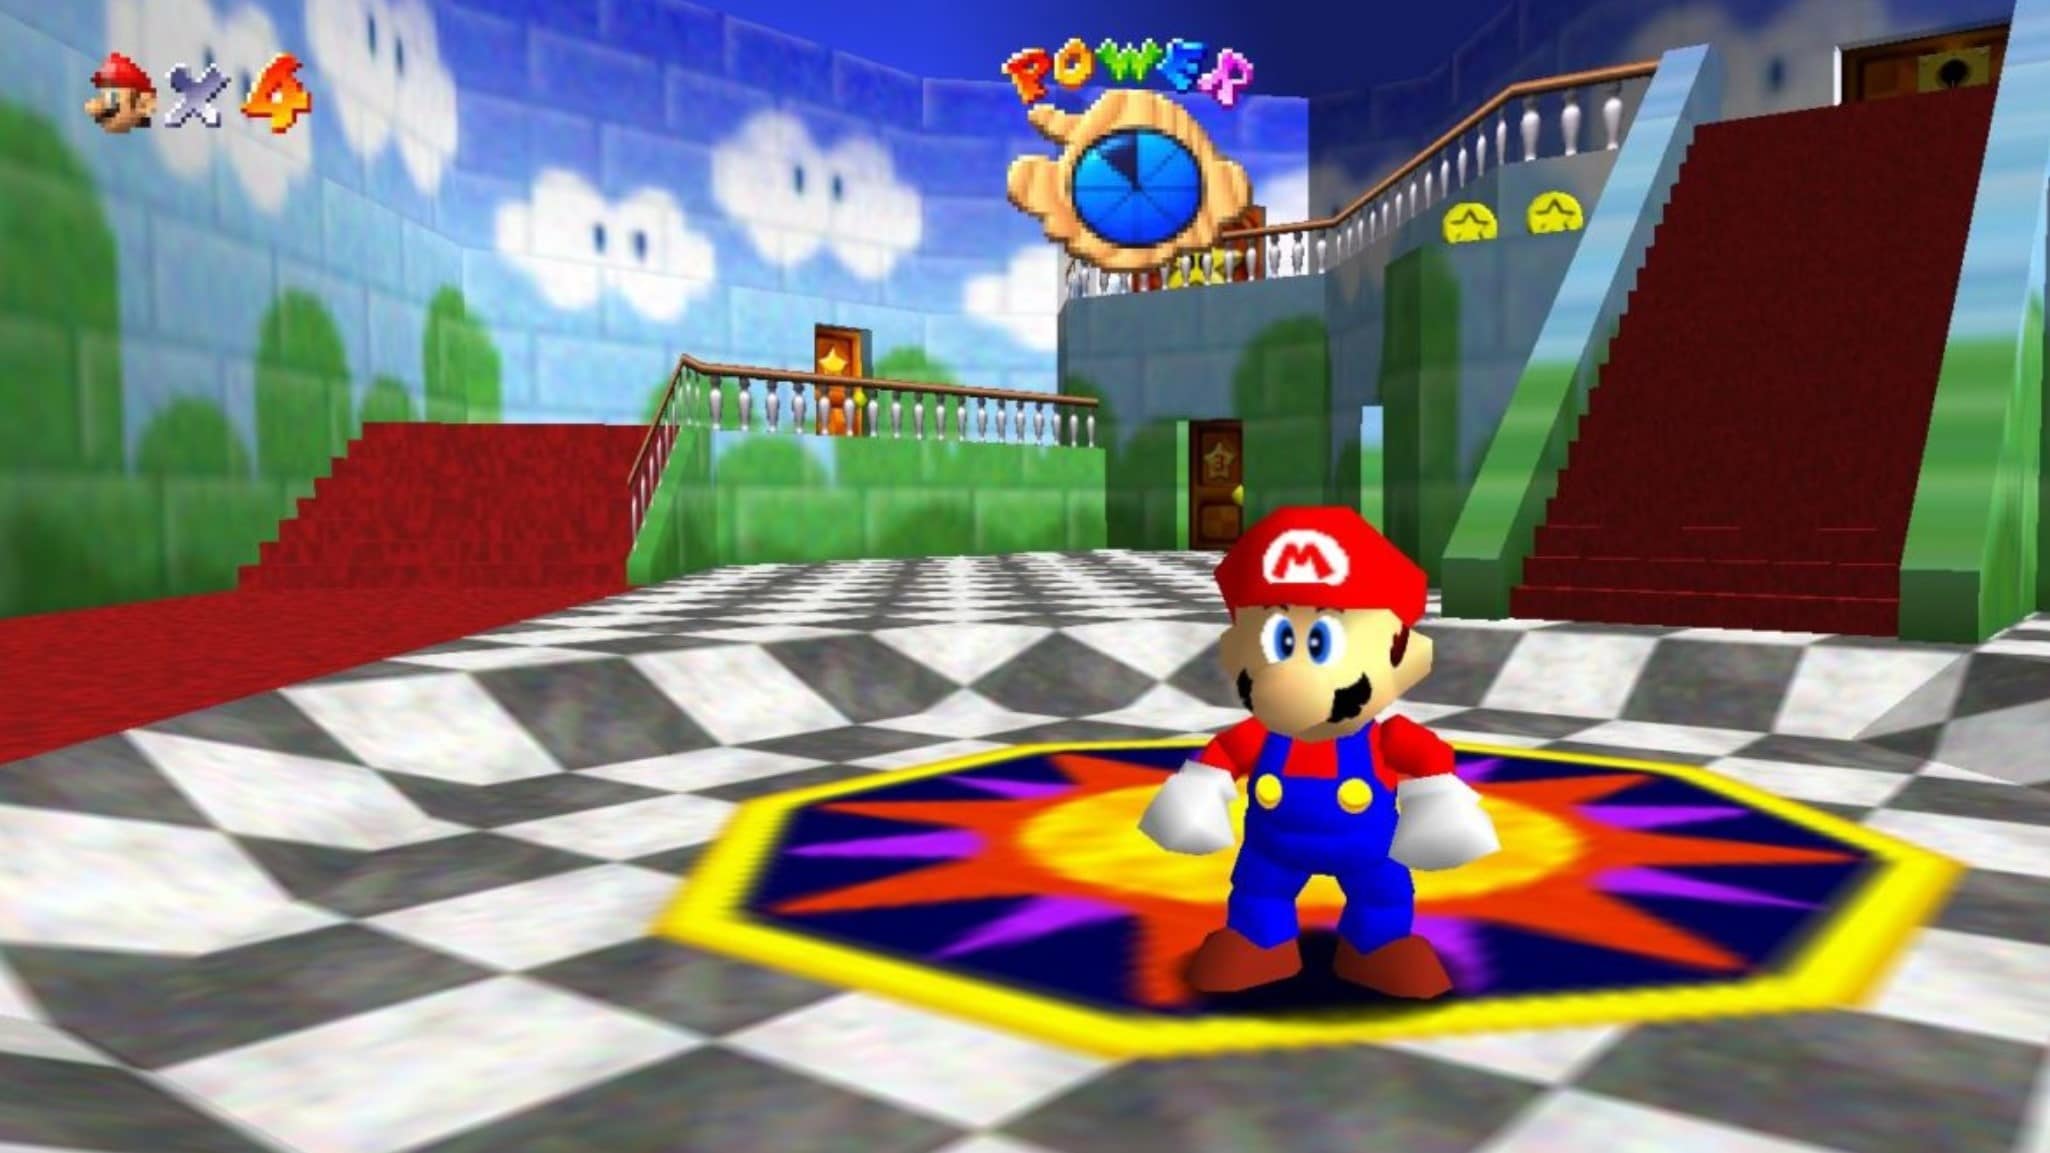 Nintendo 64 mario. Super Mario 64 Nintendo 64. Super Mario 64 Port PC (jose8820). Super Mario 64 PC Port. Mario 64 1996.